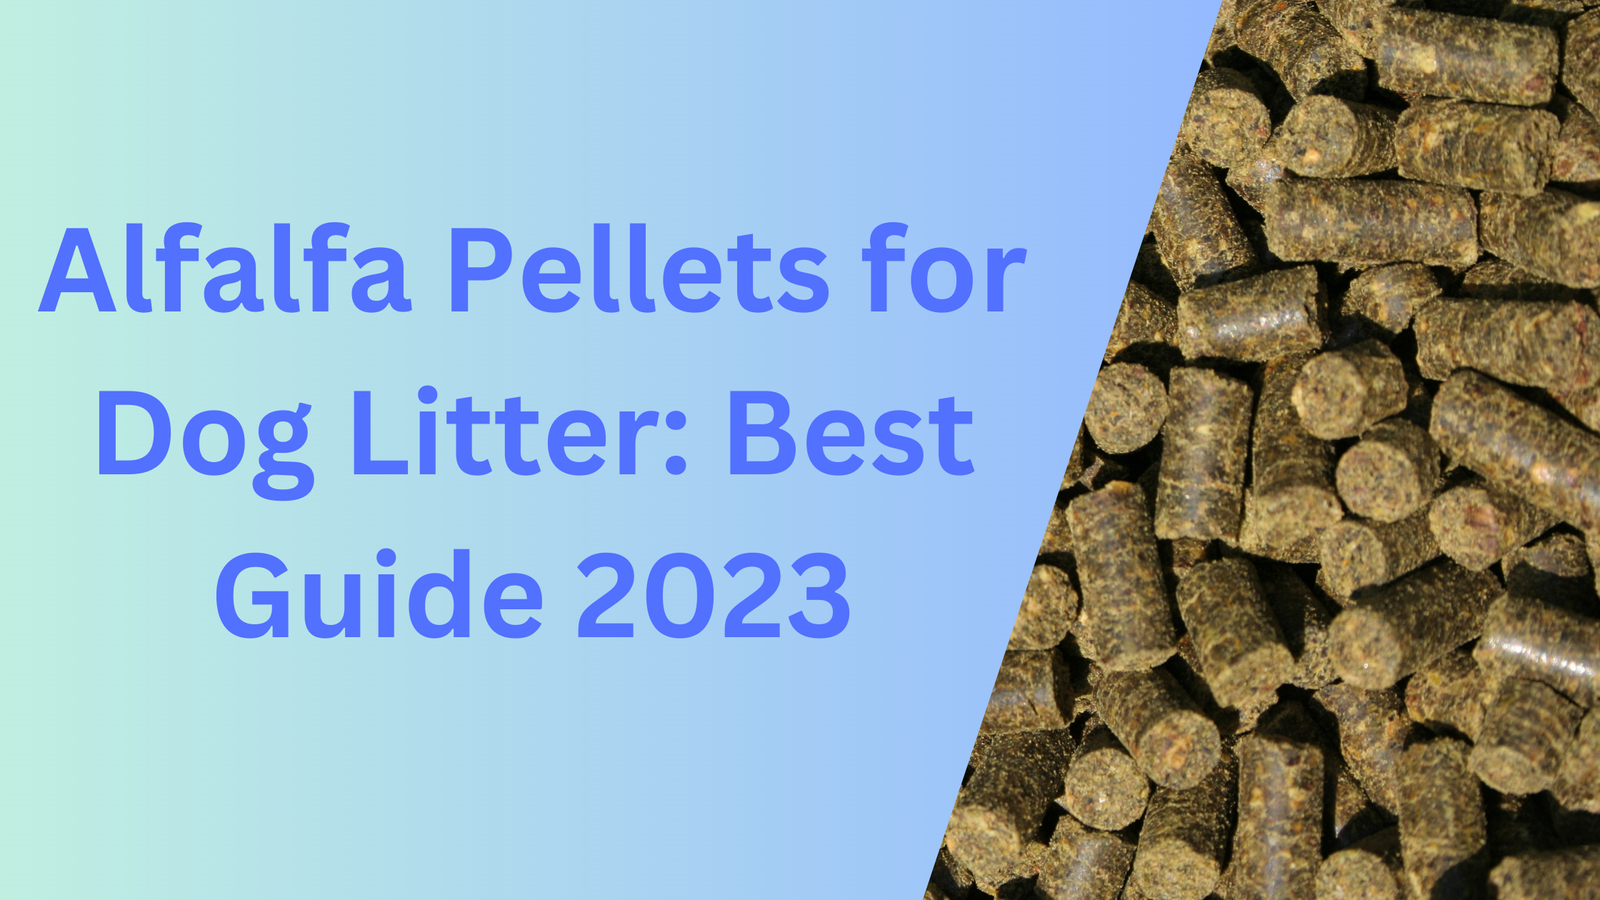 Alfalfa Pellets for Dog Litter: Best Guide 2023